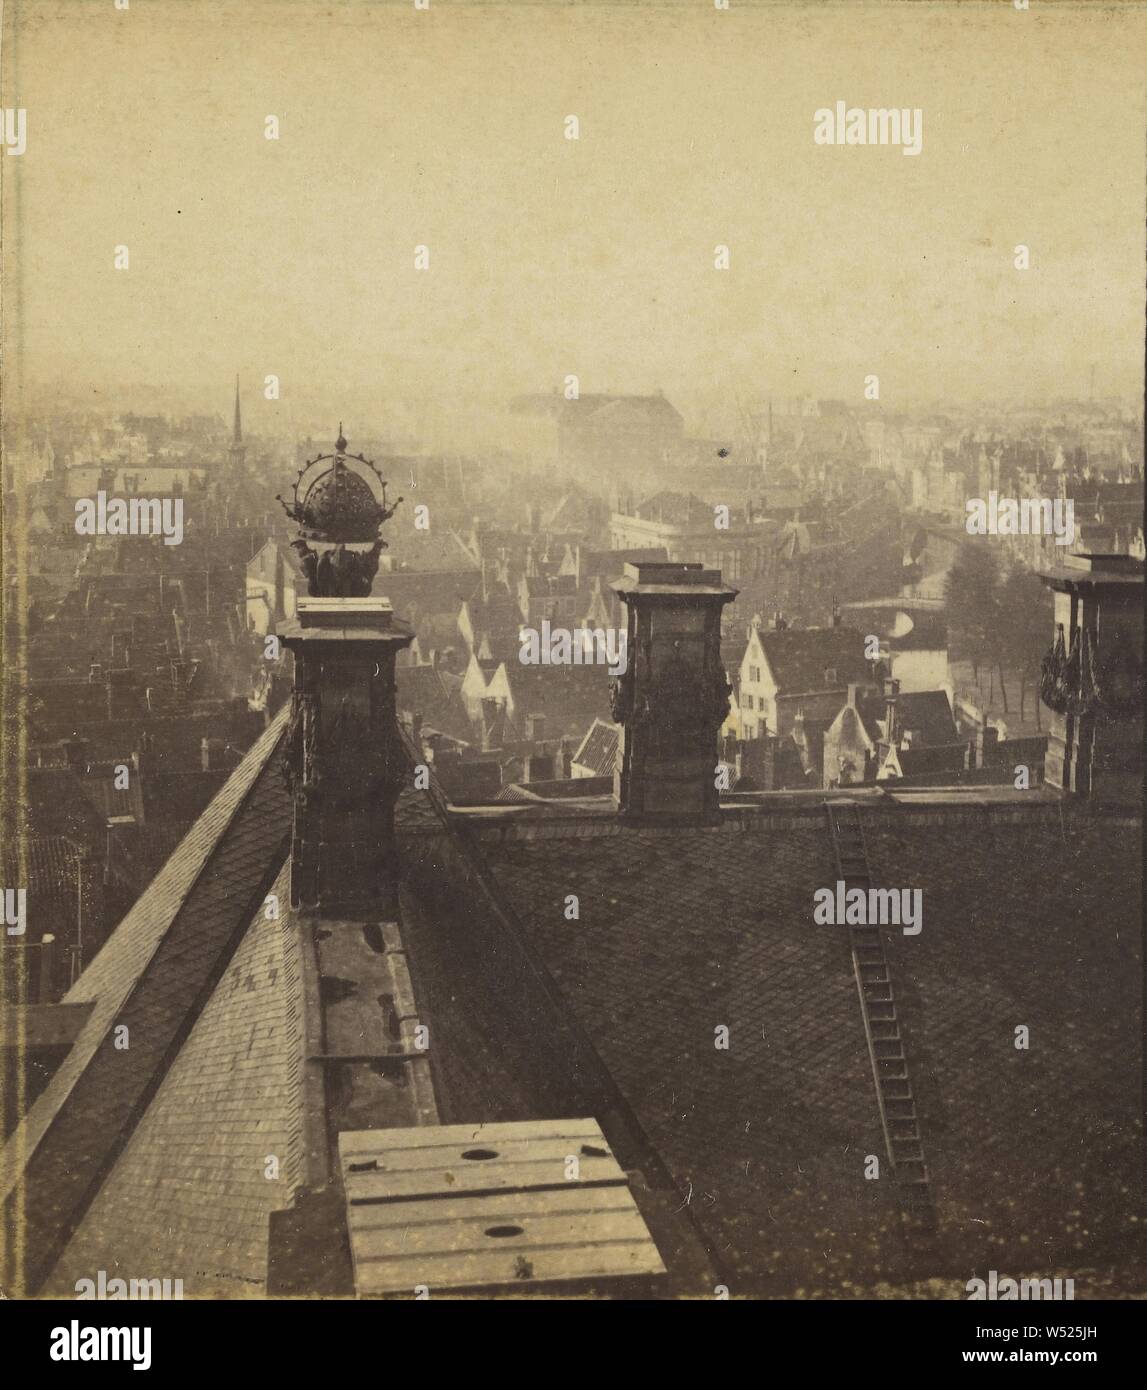 Amsterdam. Vue Panoramique, Hebeln de La Tour du Palais (nebenklägerin sud-ouest de la Ville)., Adolphe Braun (Französisch, 1812-1877), 1865-1875, Eiweiß silber Drucken Stockfoto